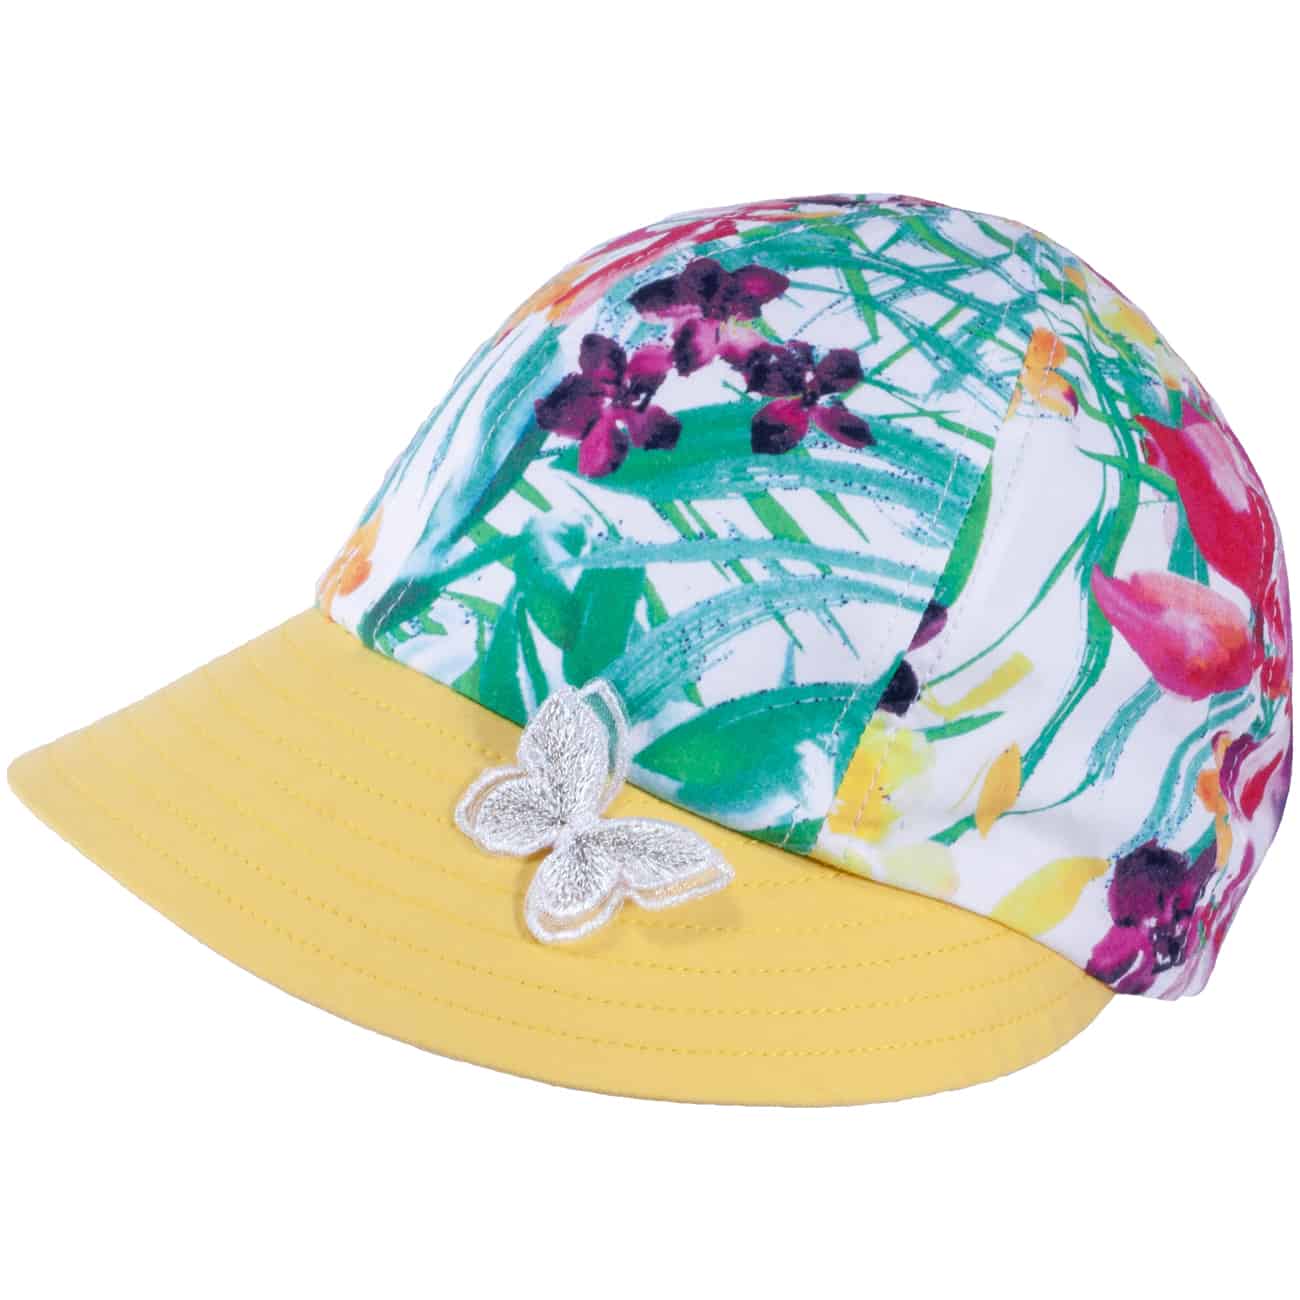 TUTU Kindermütze - Sommermütze - Kappe mit Blumenmuster und Schmetterling Applikation